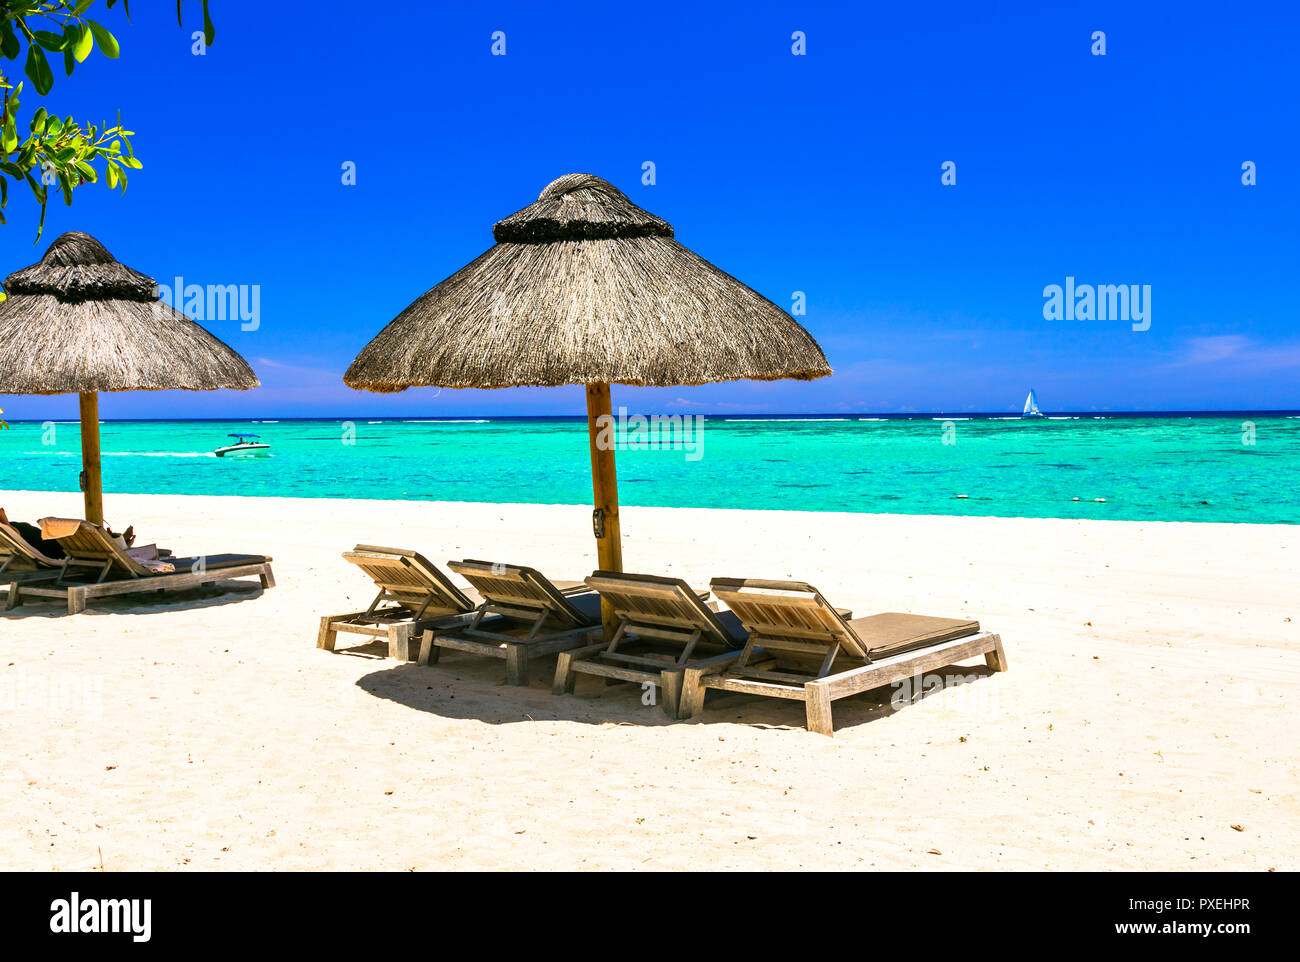 Vacances tropicales à l'île Maurice,avec vue sur la mer d'azur et de parasols. Banque D'Images